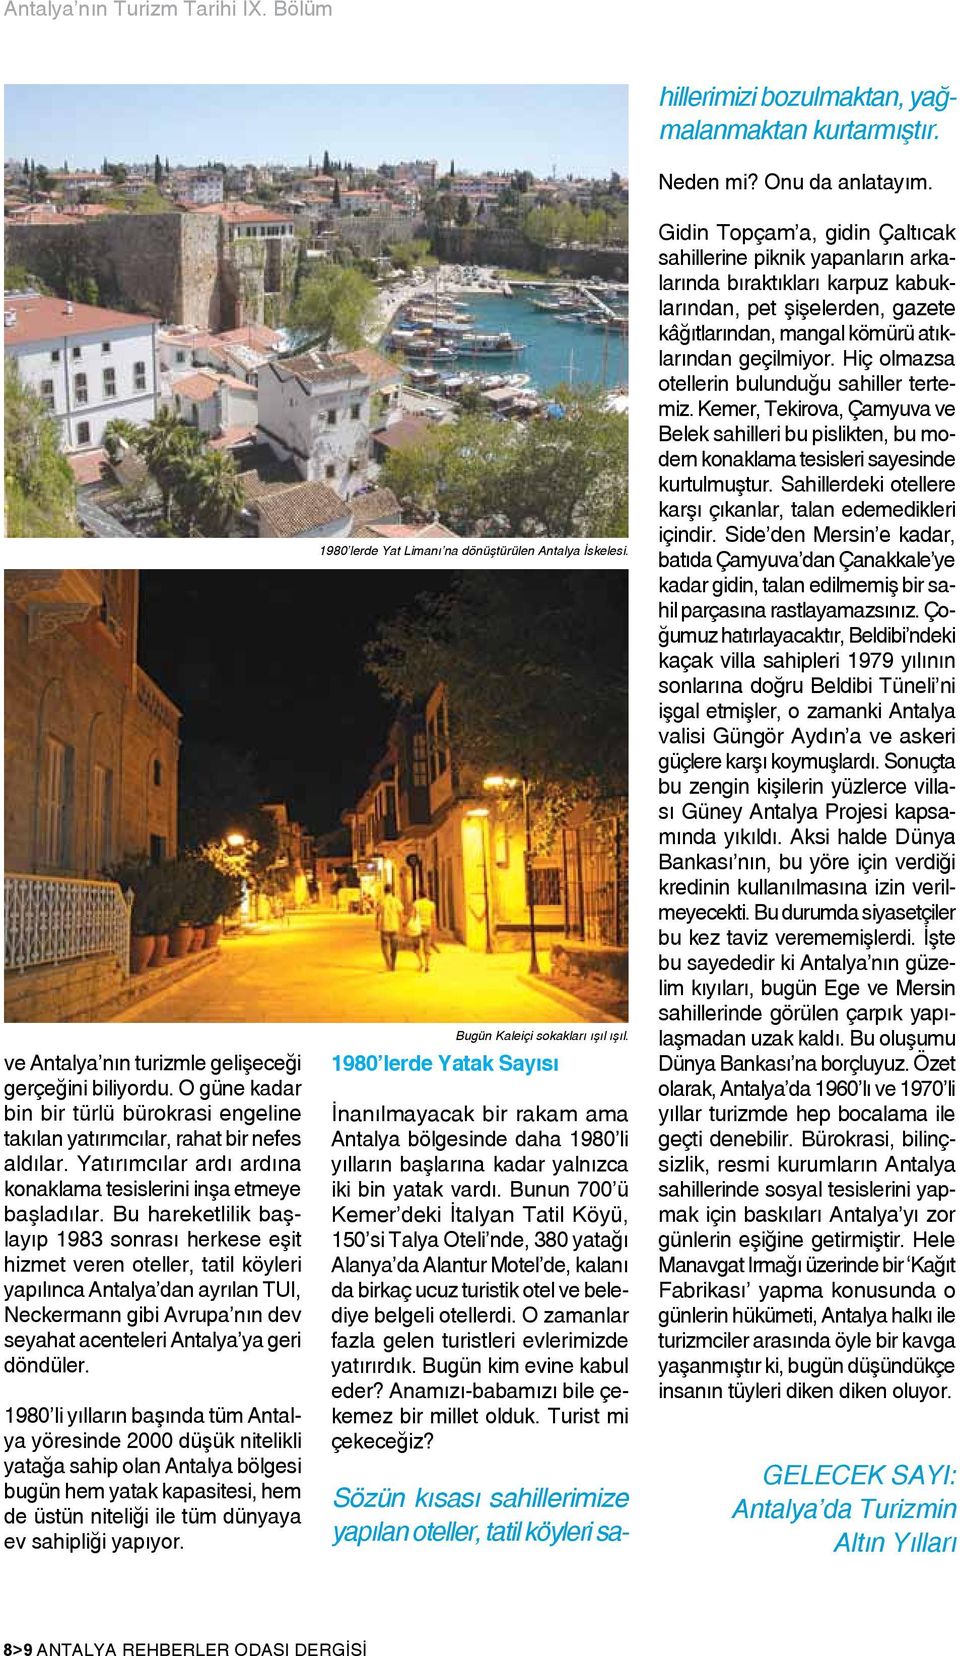 Bu hareketlilik başlayıp 1983 sonrası herkese eşit hizmet veren oteller, tatil köyleri yapılınca Antalya dan ayrılan TUI, Neckermann gibi Avrupa nın dev seyahat acenteleri Antalya ya geri döndüler.